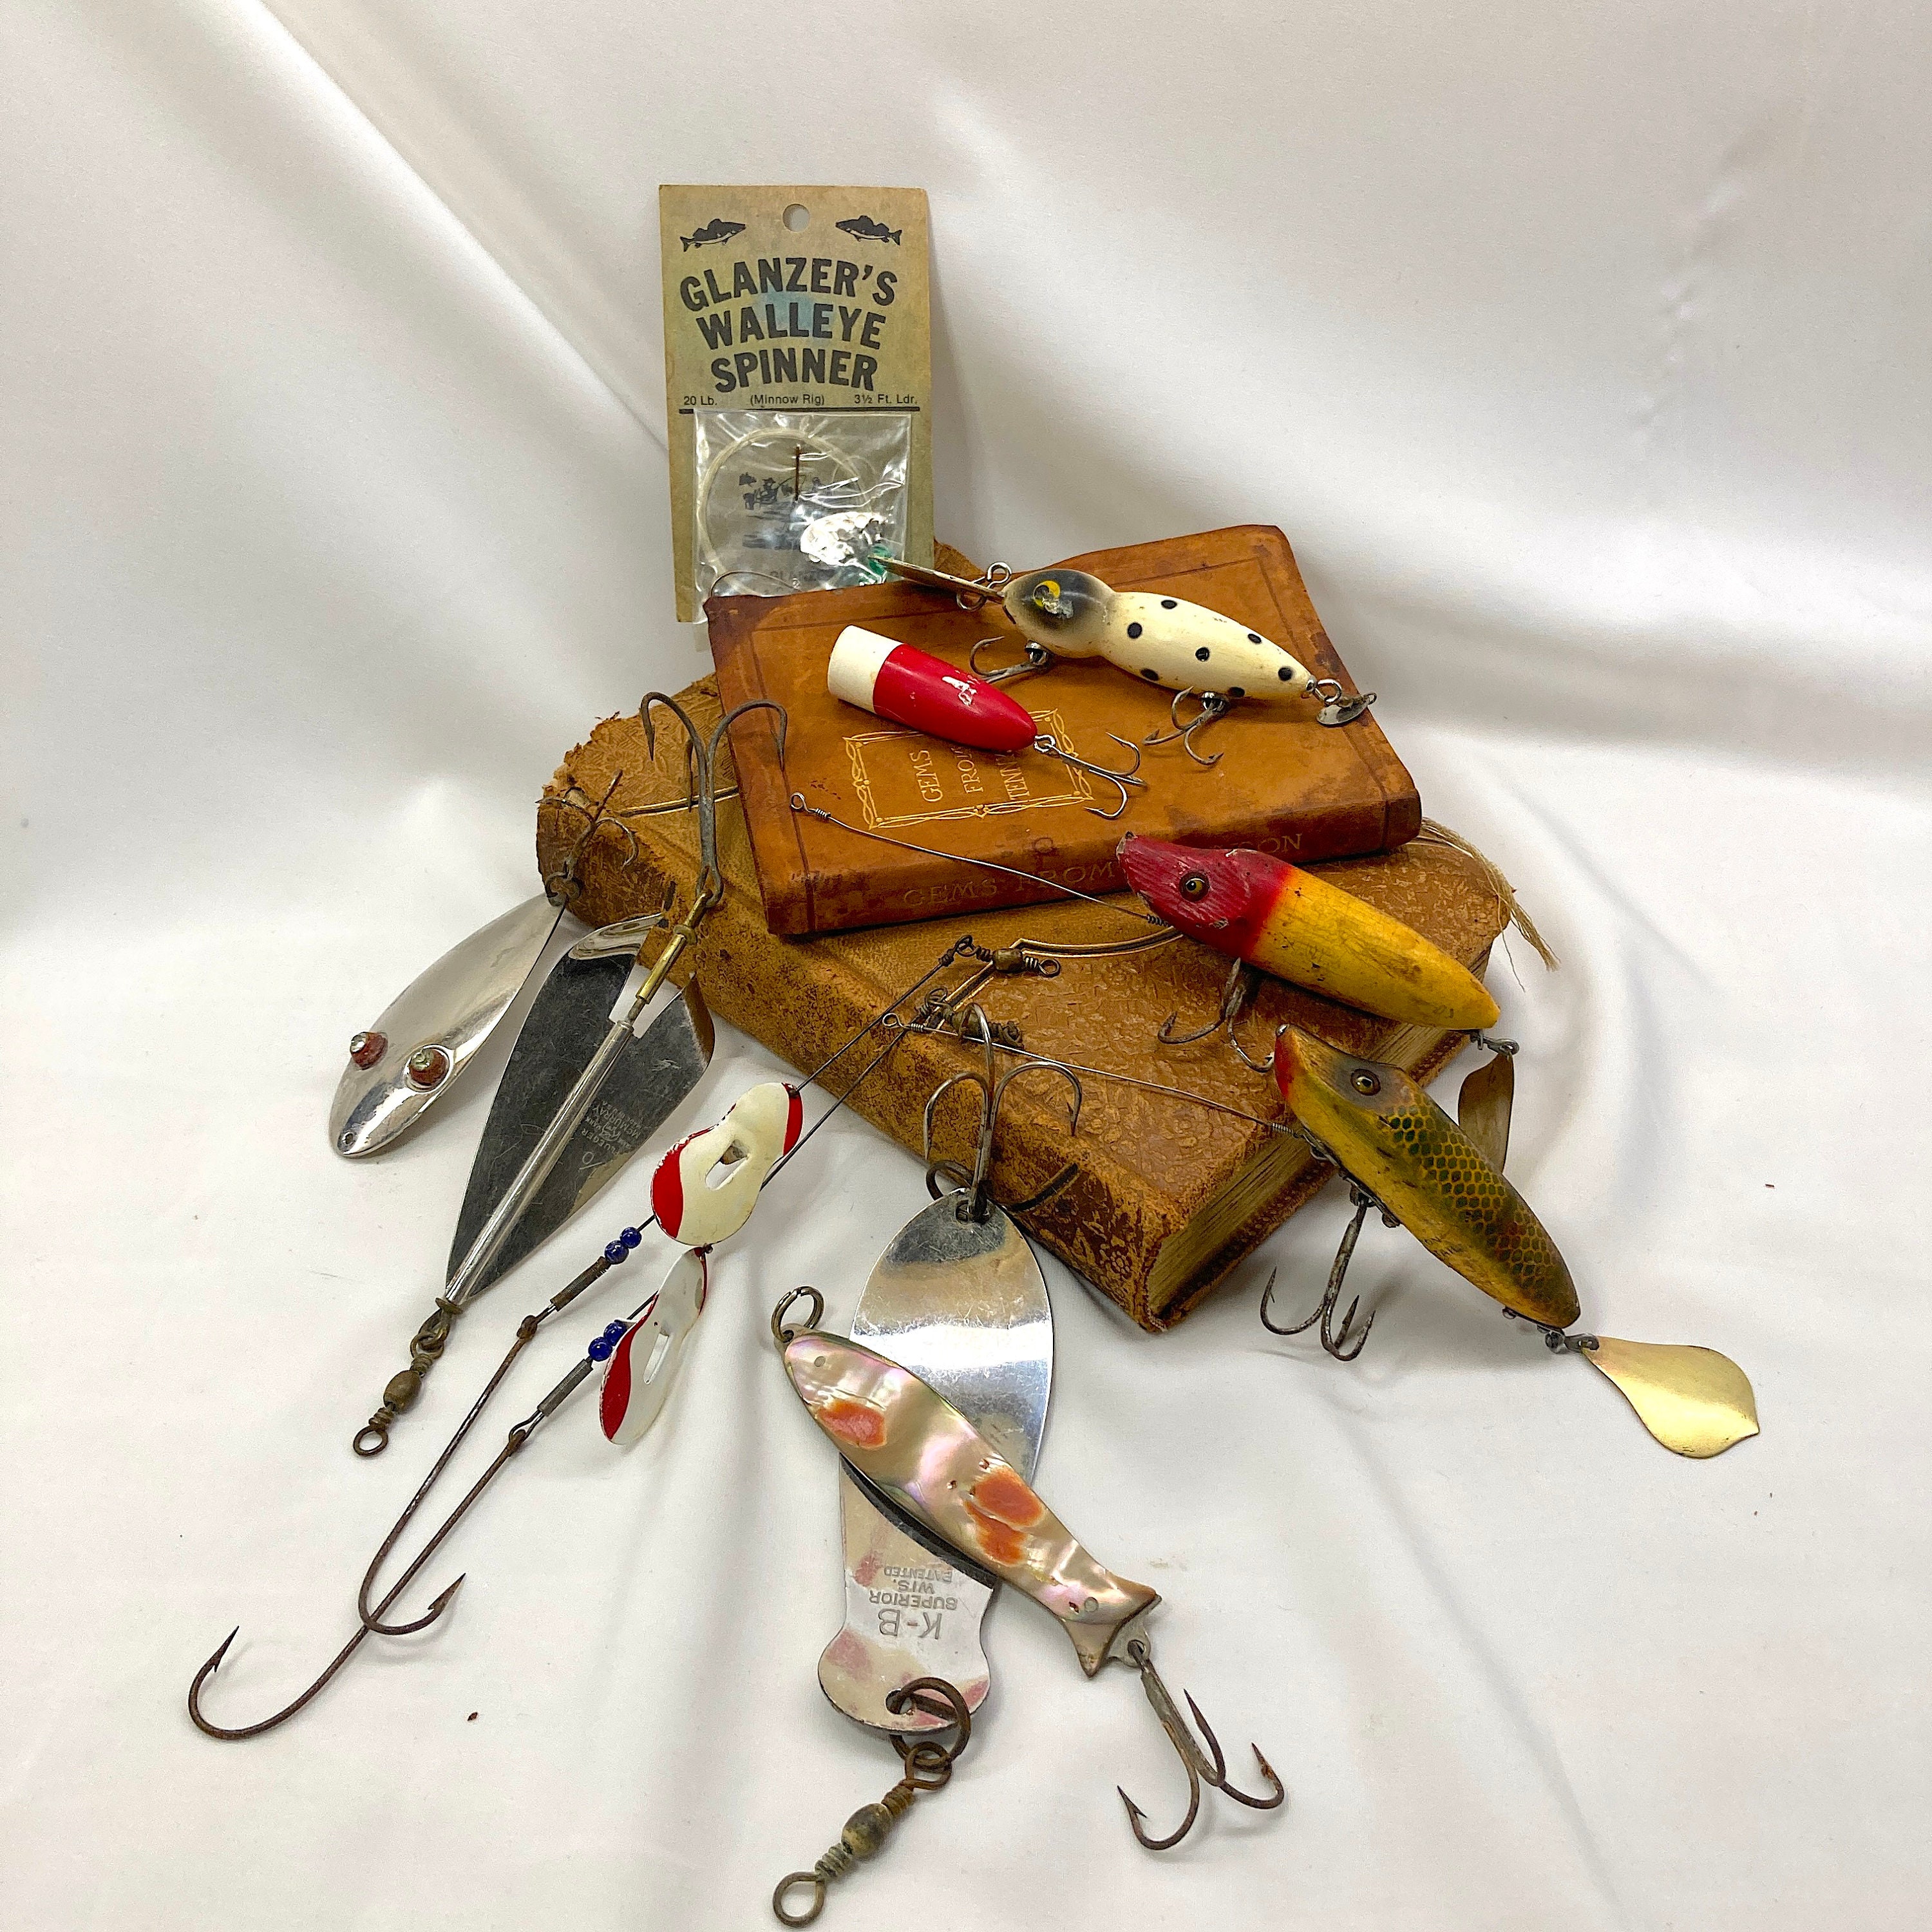 Vintage Fishing Tackle - The Old Design Shop